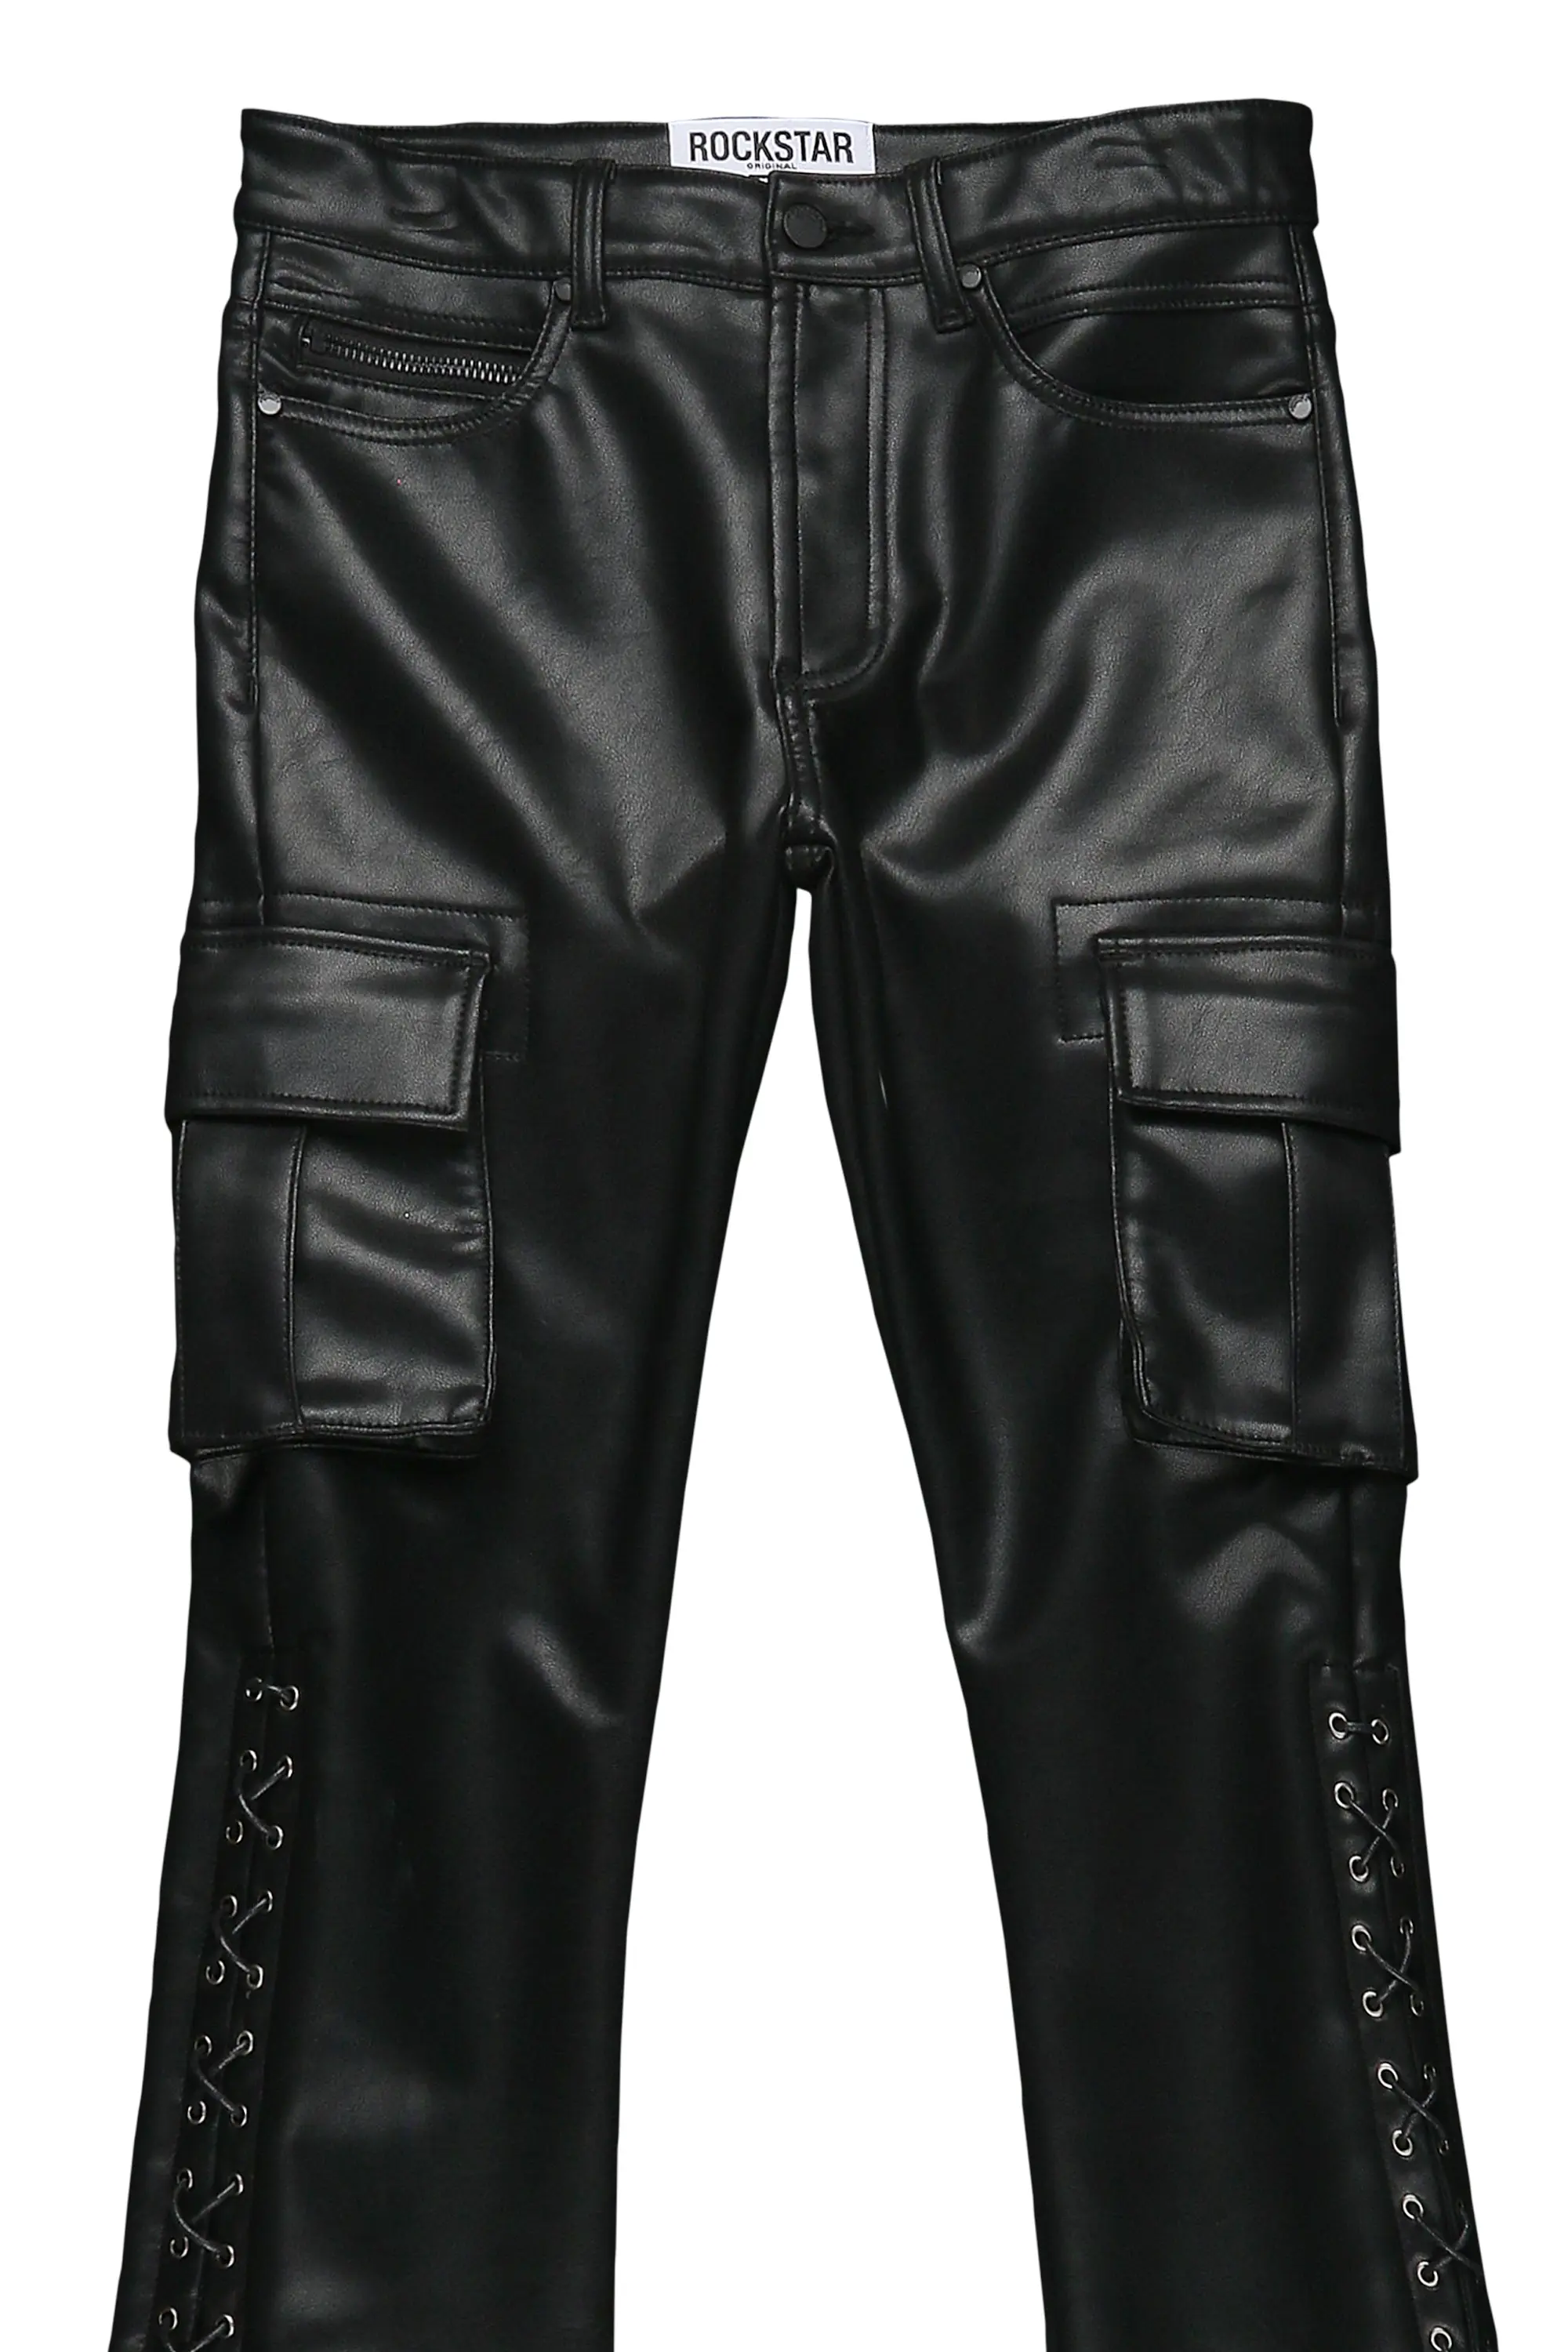 Men's Pants – West Coast Leather